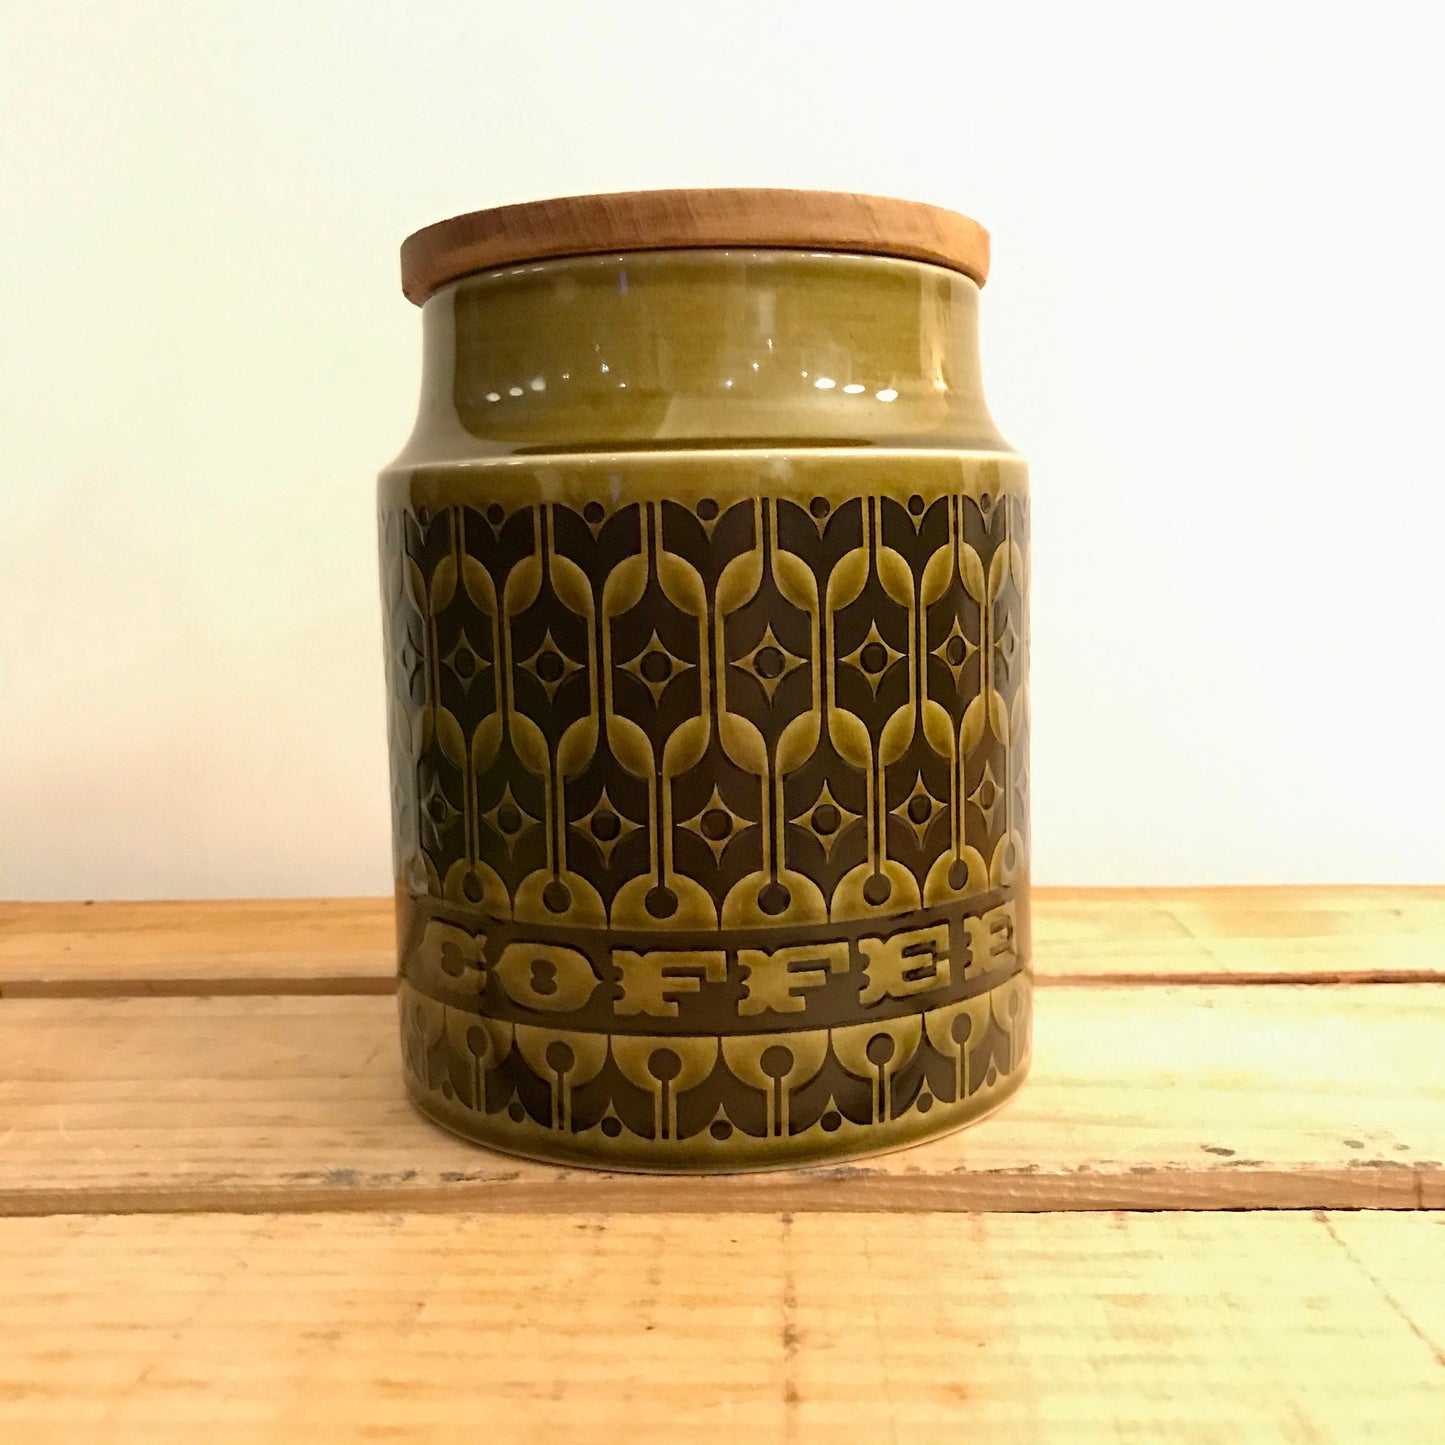 Hornsea green Heirloom storage jars